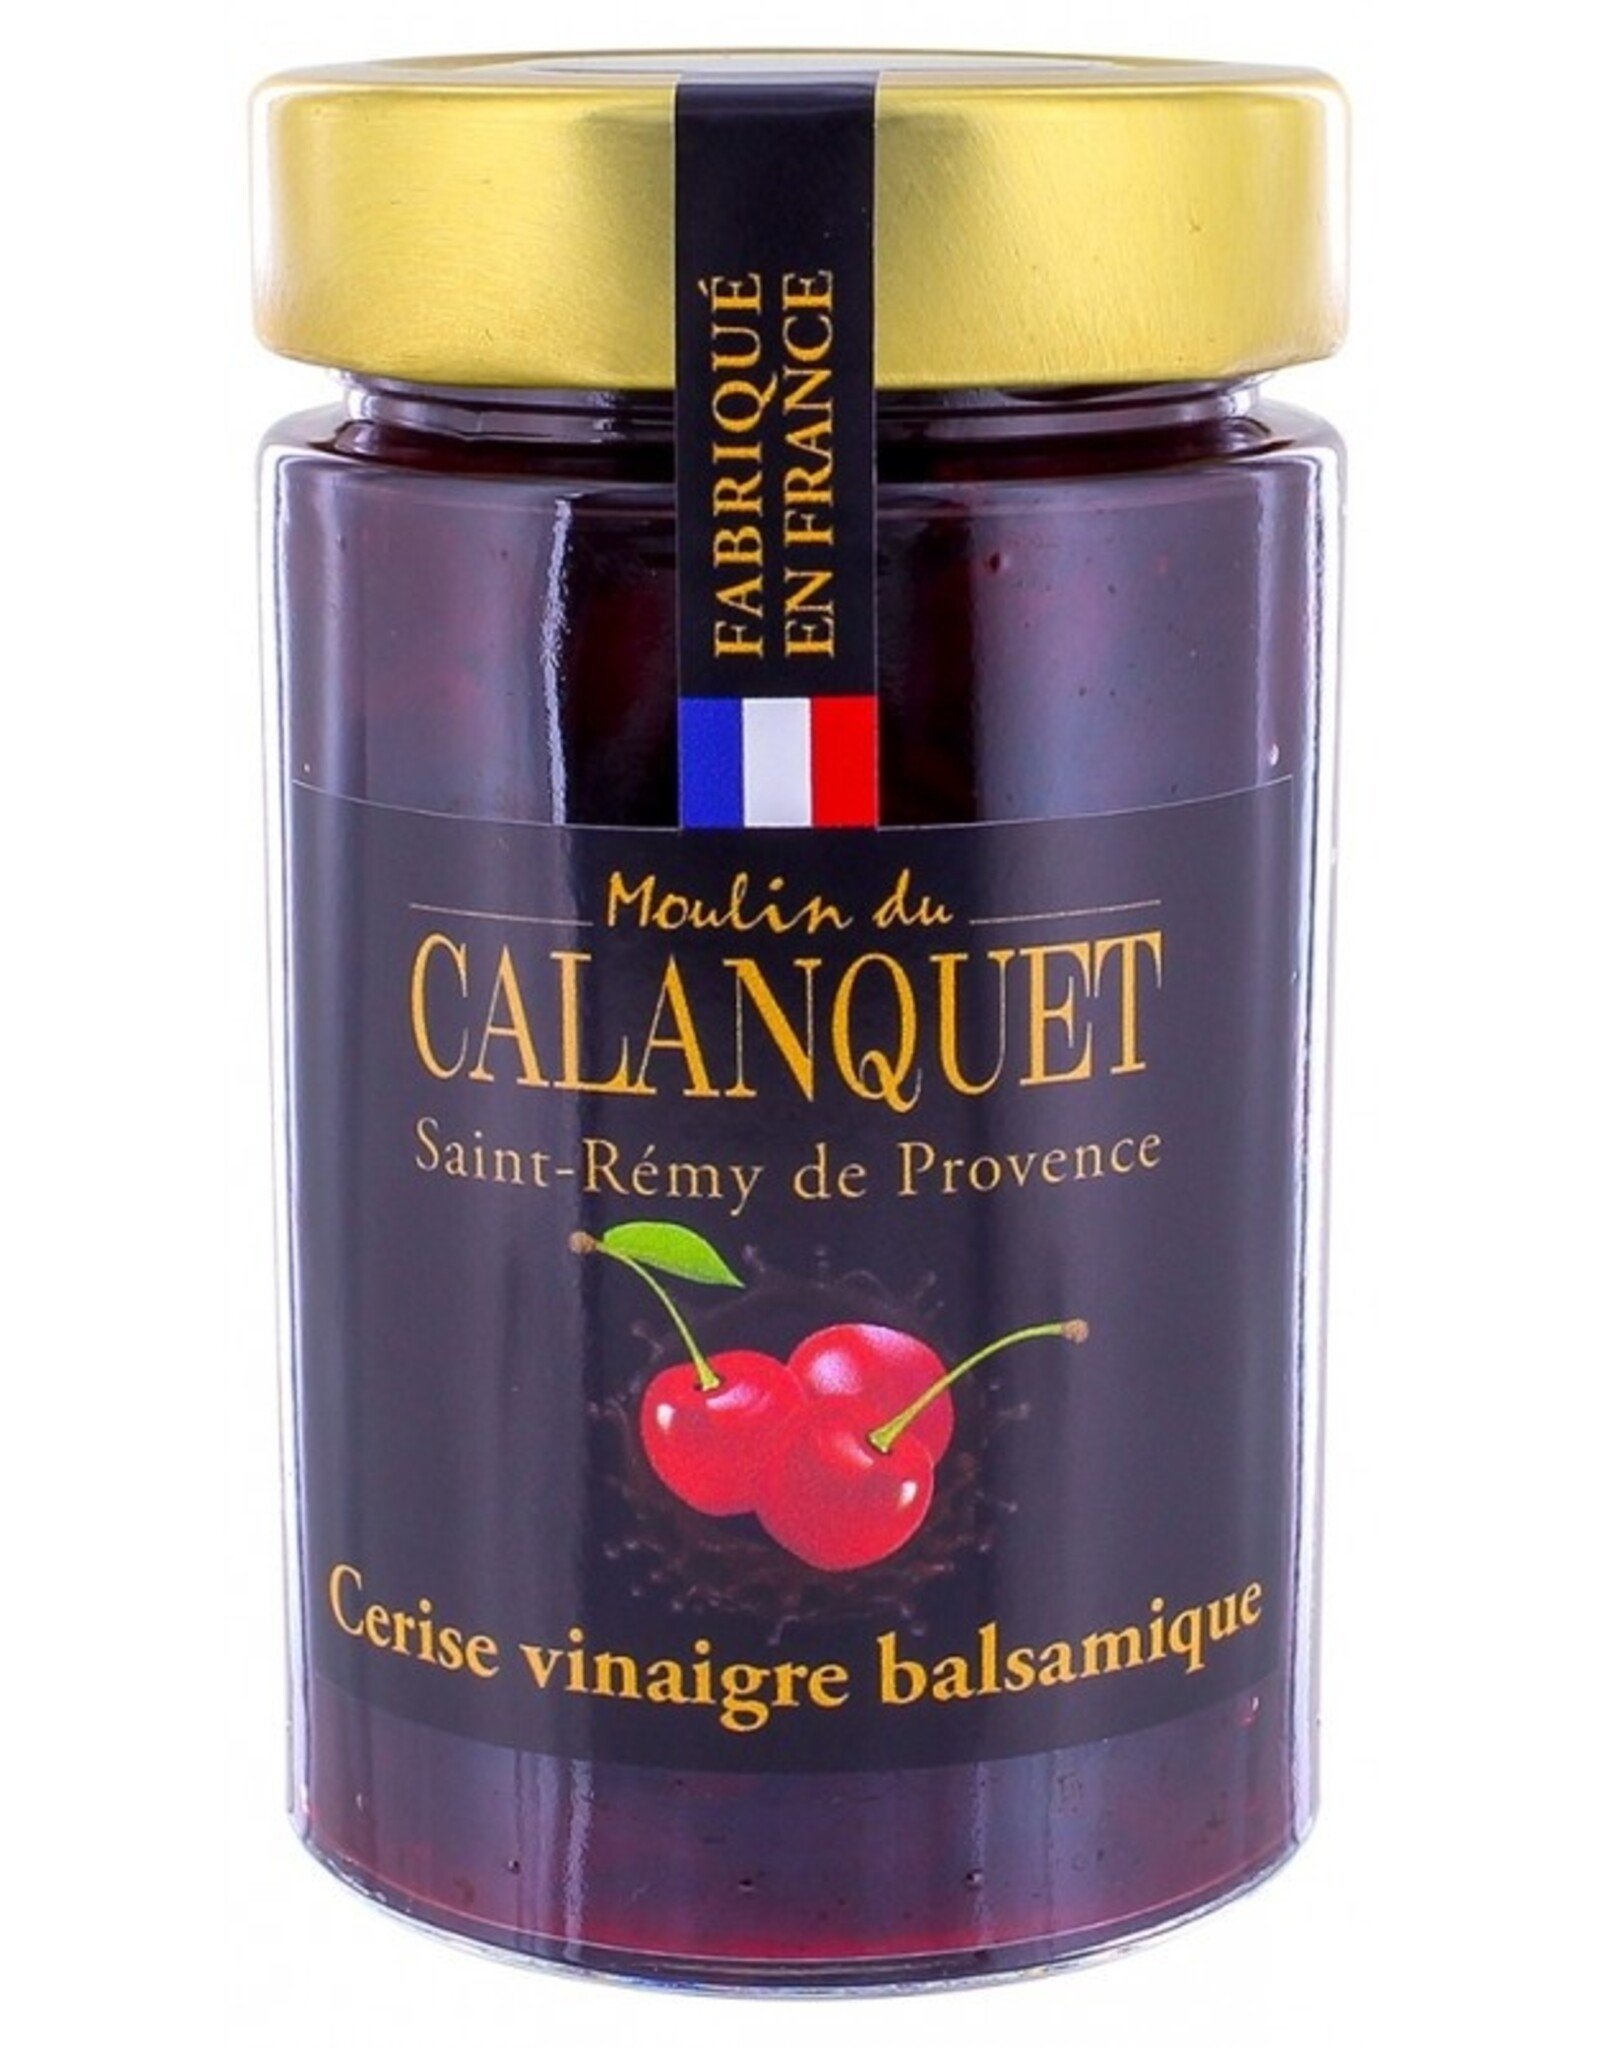 Moulin du Calanquet Confiture Cerise Vinaigre Balsamique / Cherry & Balsamic Jam 220 g